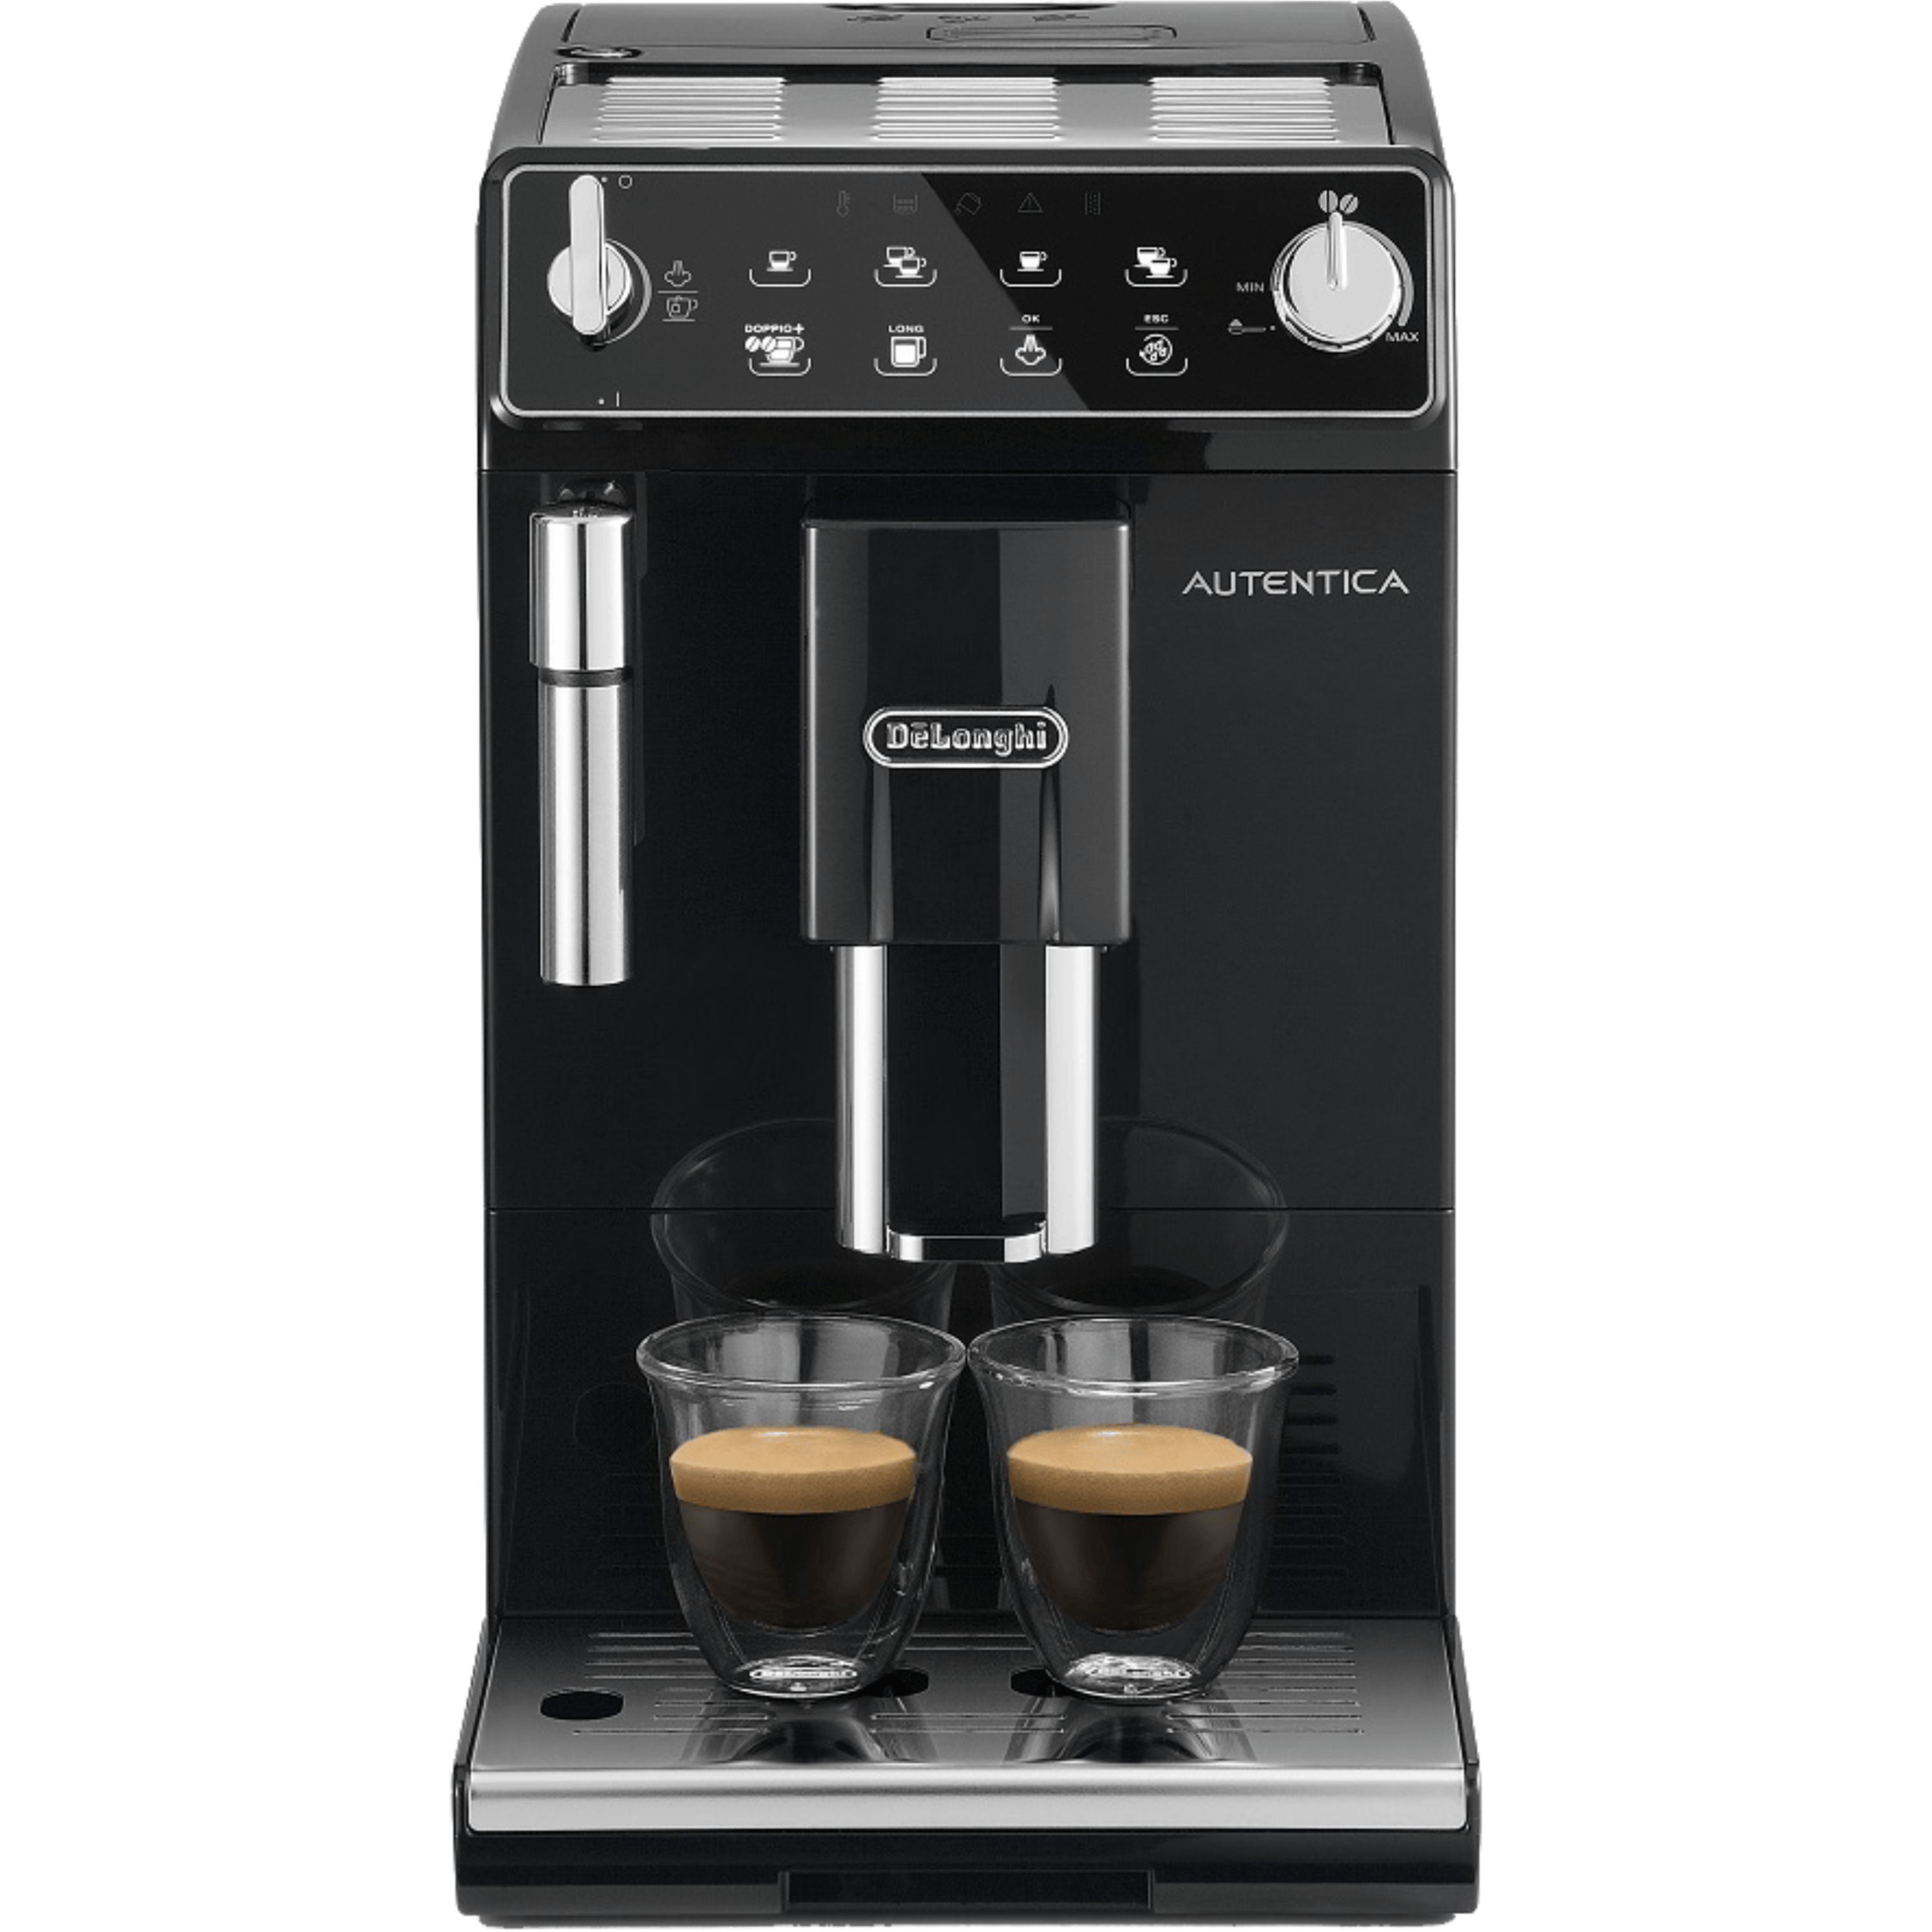 ماكينة قهوة موديل ETAM29.515.B בلون أسود DeLonghi